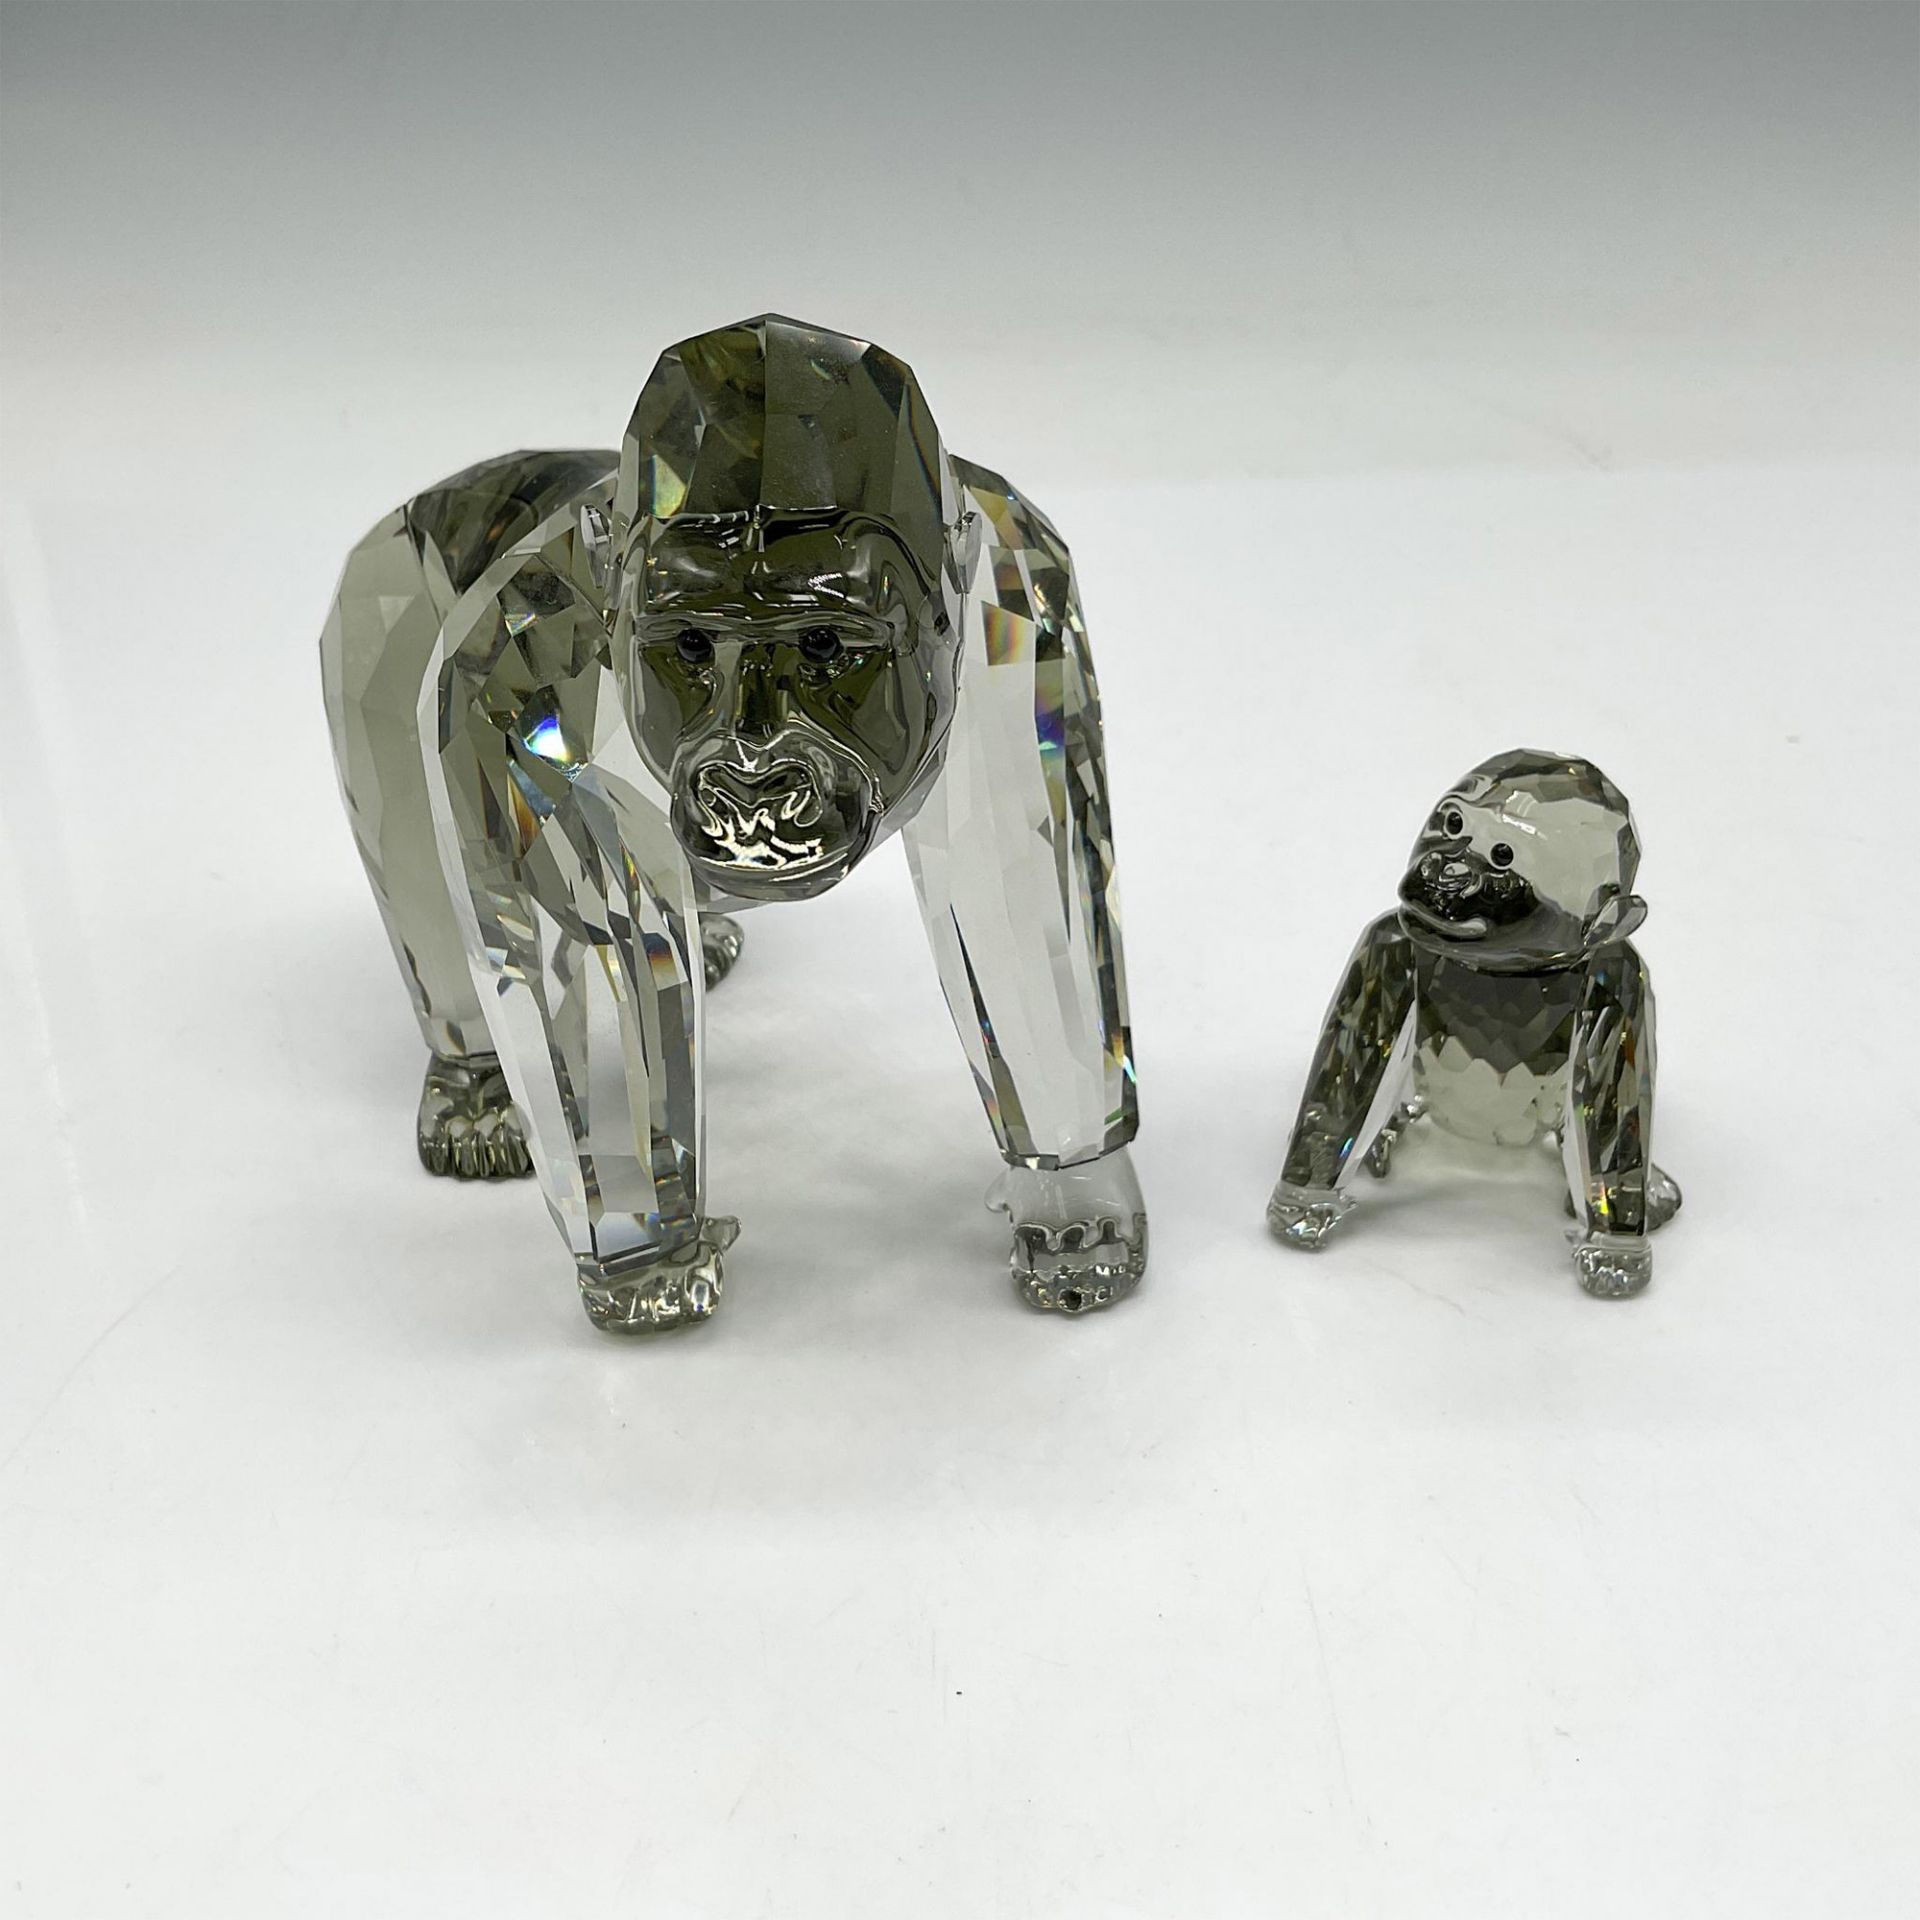 Swarovski Silver Crystal Society Figurine, Gorillas